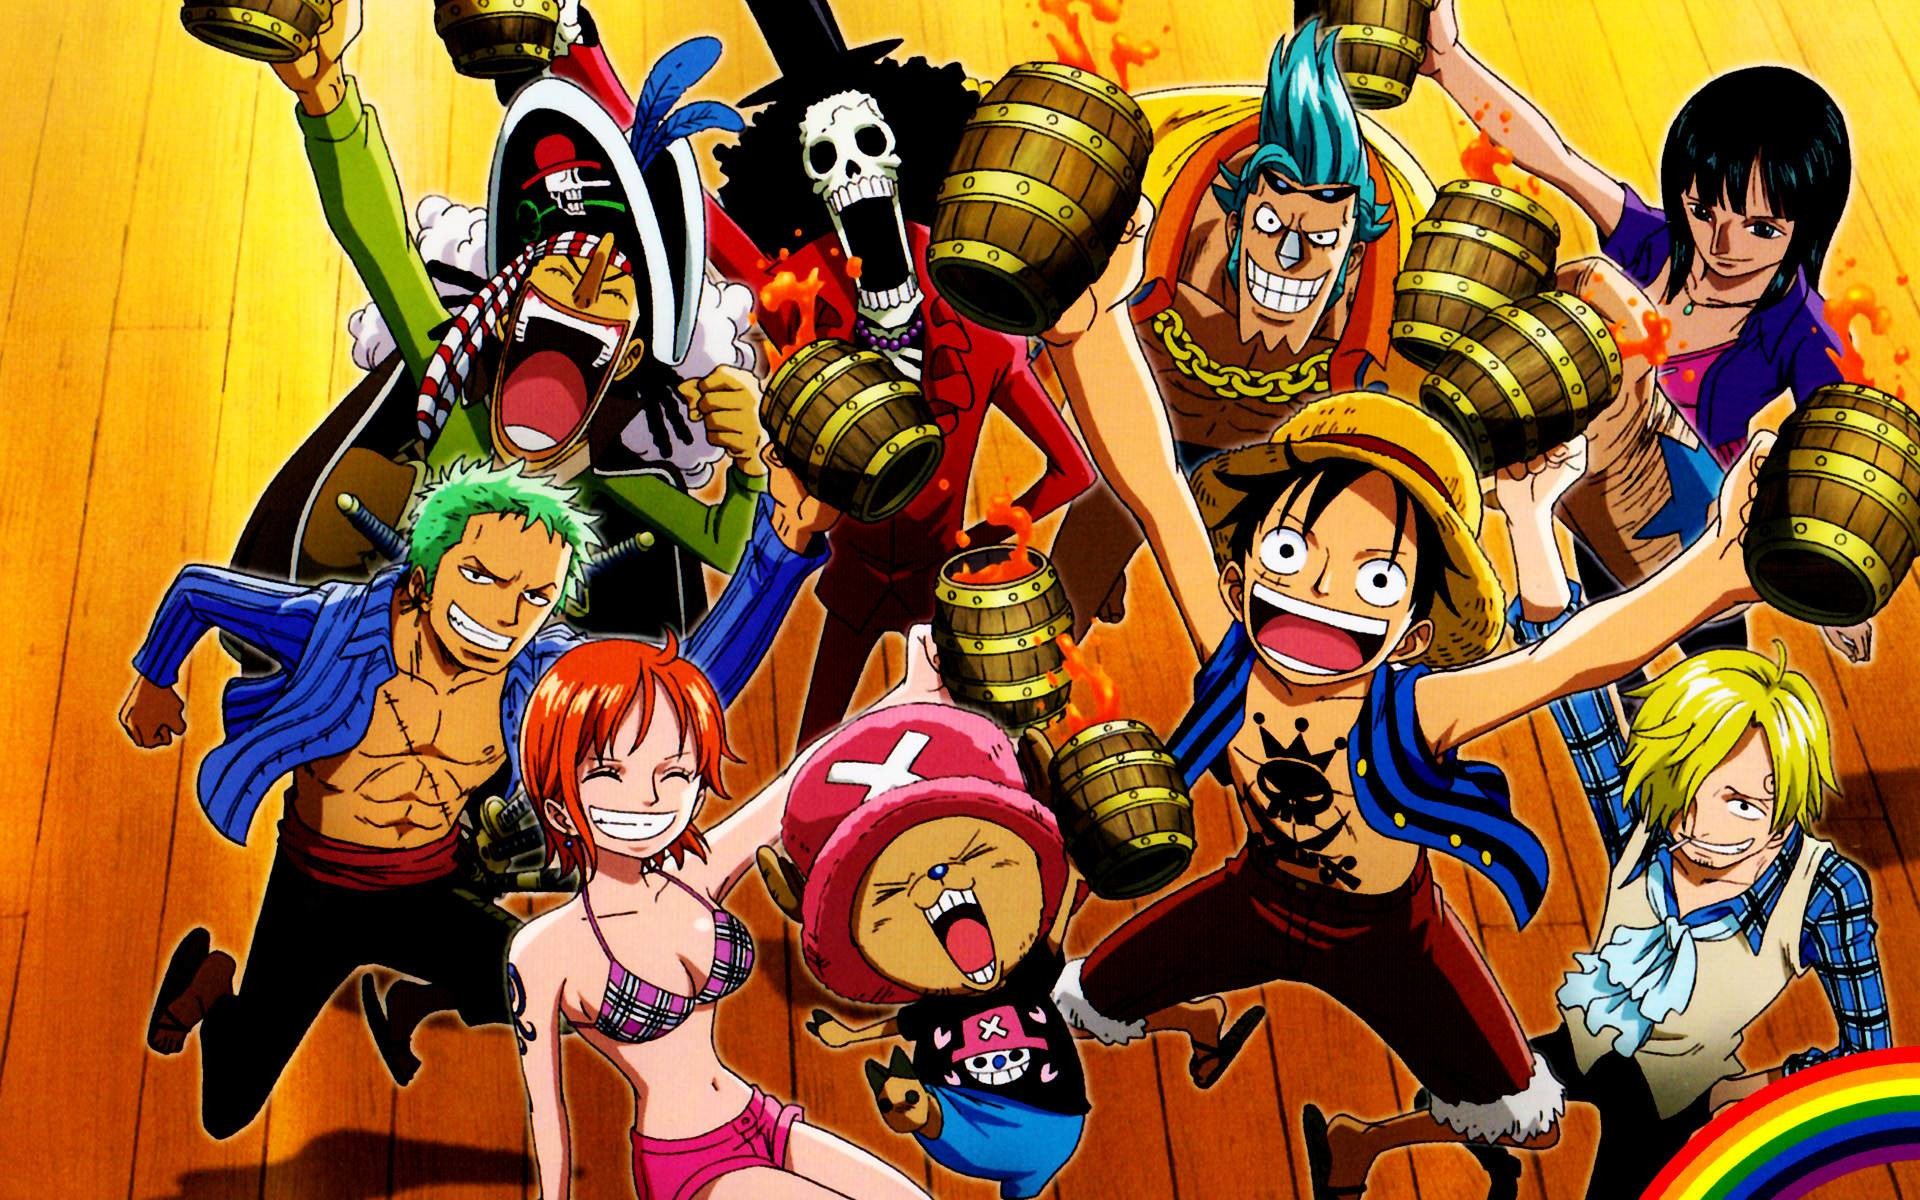 Koleksi 20+ Gambar Anime Keren One Piece Yang Paling Dicari - Dunia